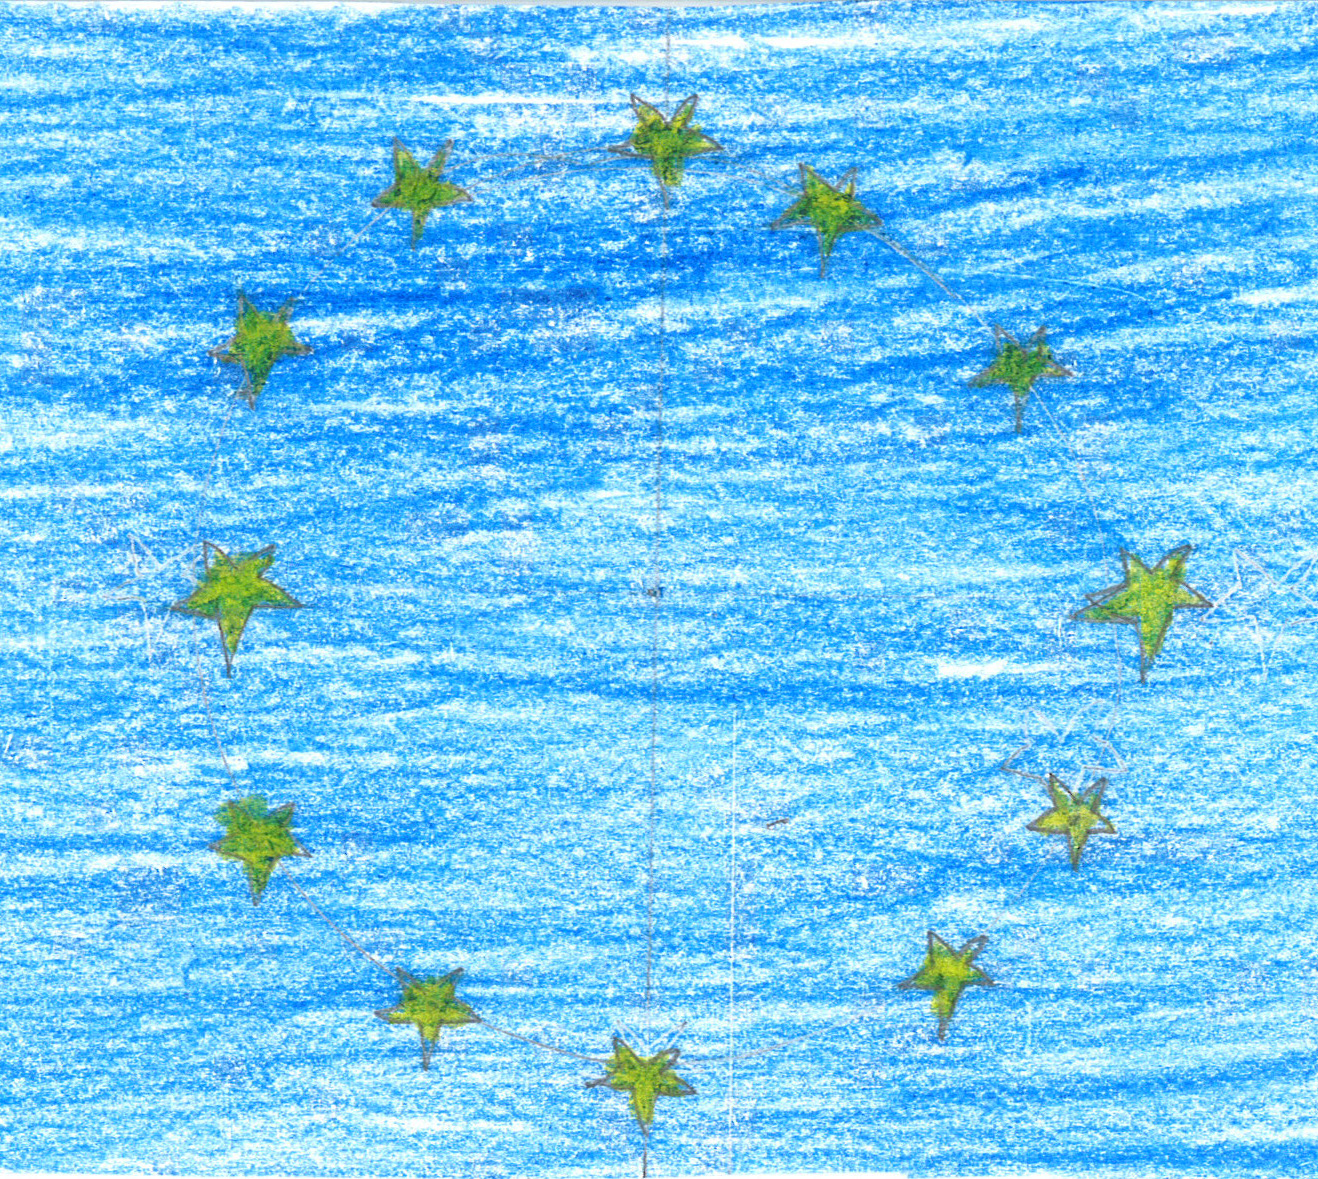 Nr. 477 Mittwoch, 12. Jänner 2011 DIE ENTSTEHUNG UND VEREINIGUNG DER EUROPÄISCHEN UNION Friede für Europa- Geschichte der Europäischen Union Nach dem 2.